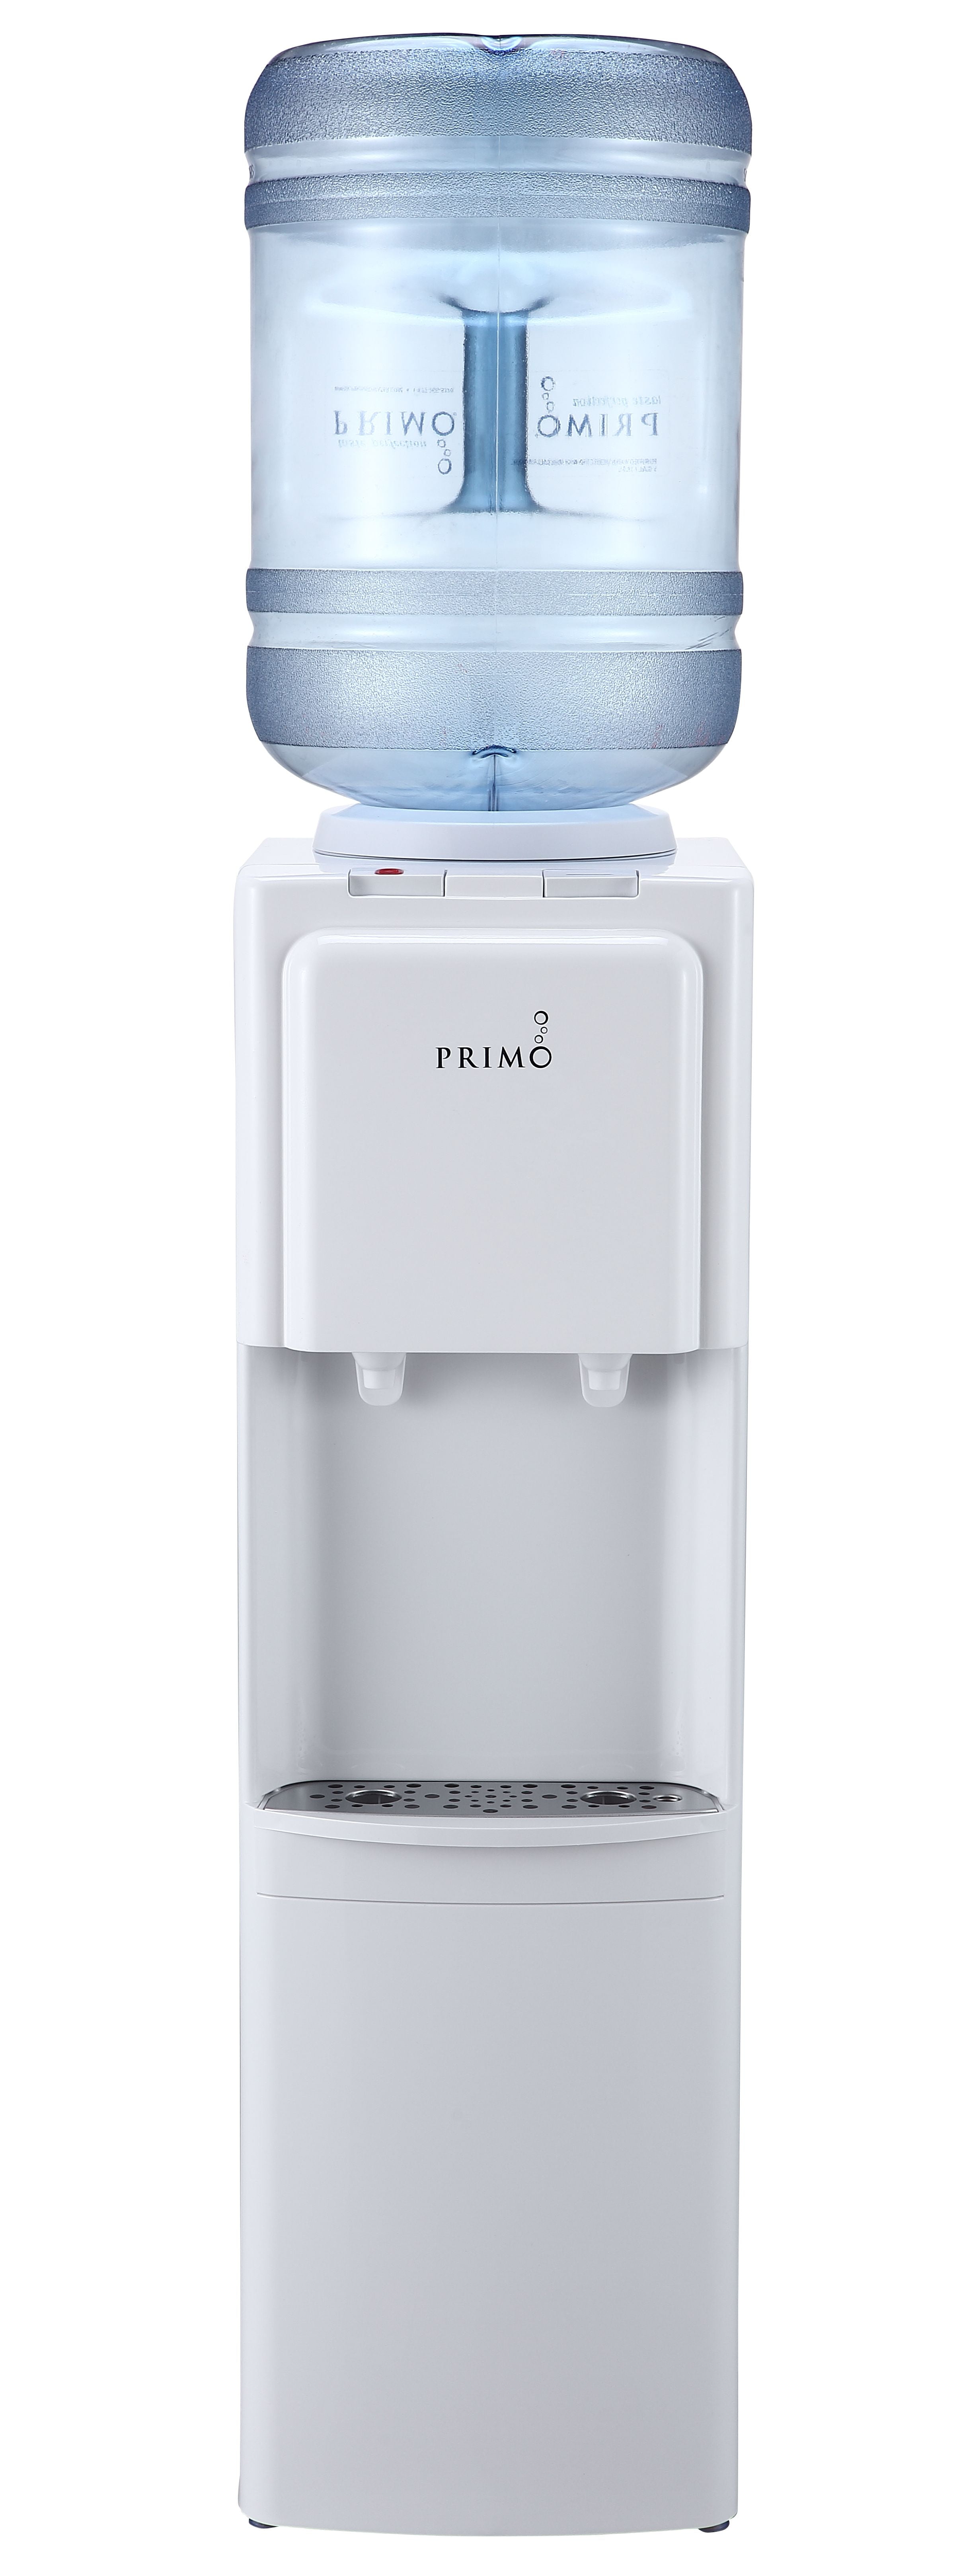 Primo Water Dispenser Top Loading, Hot, Cold Temperature, White 3 or 5  Gallon